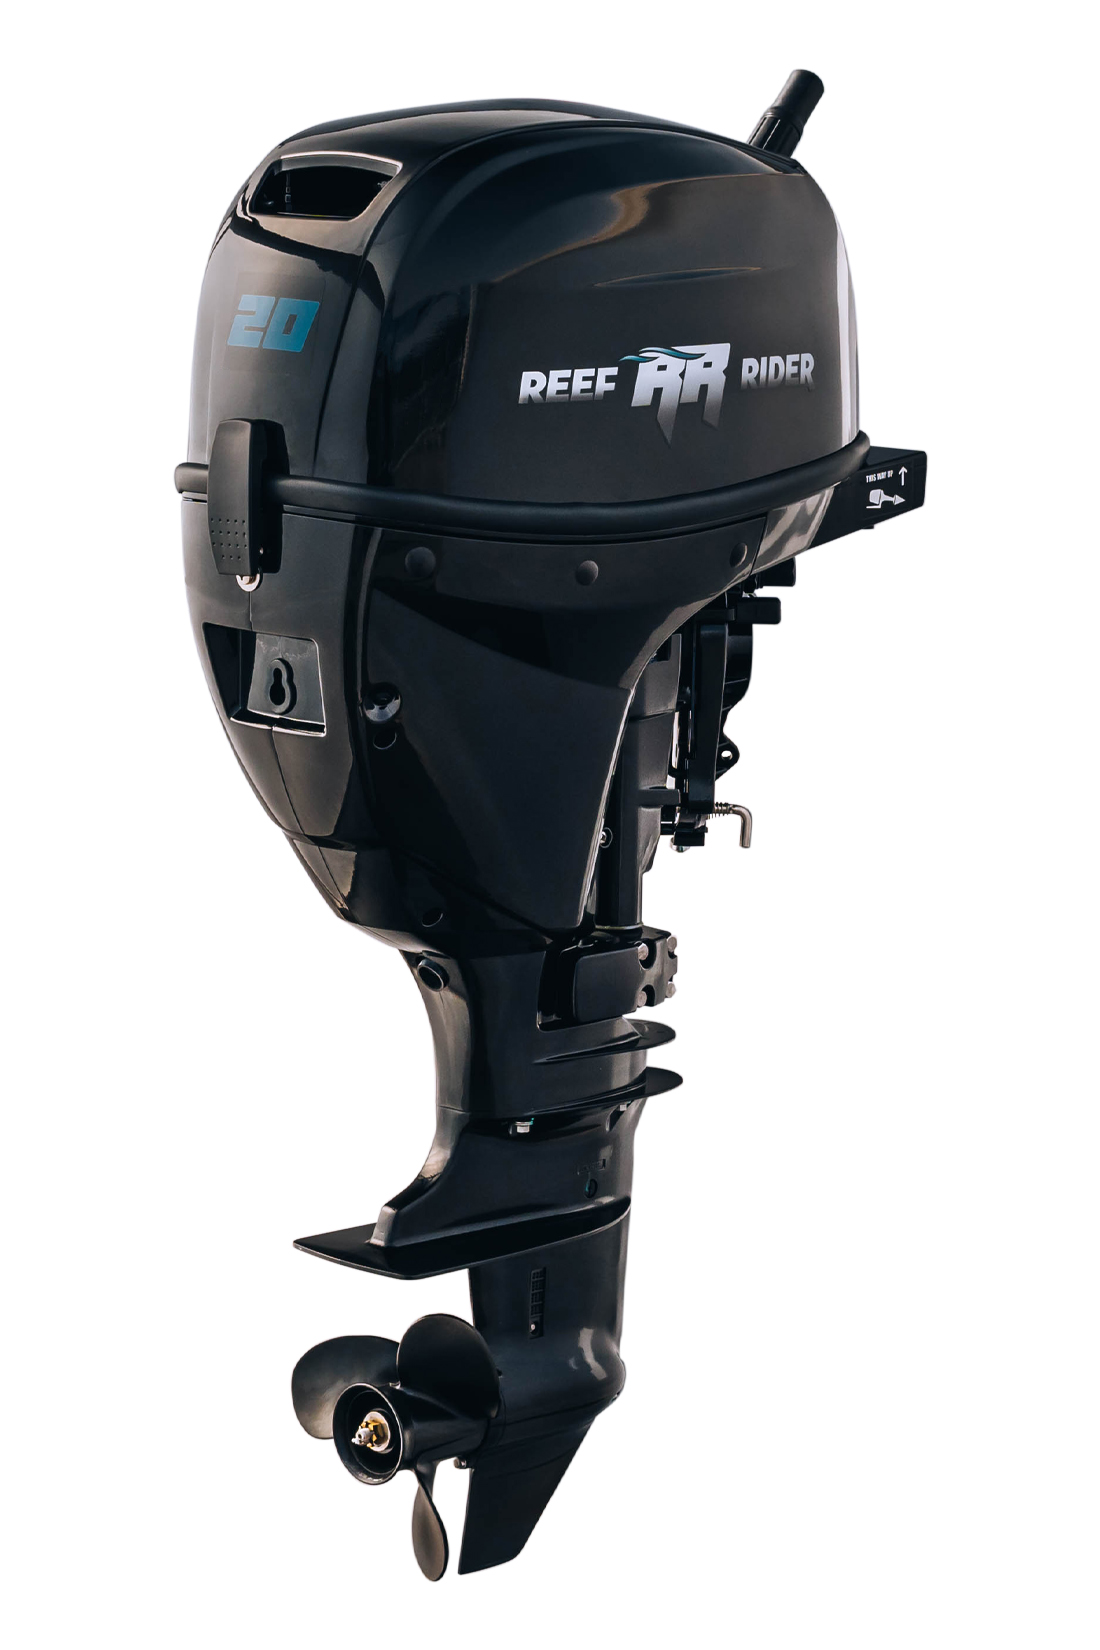 Reef Rider RRF 20 HS (20 л.с., 4 такта)